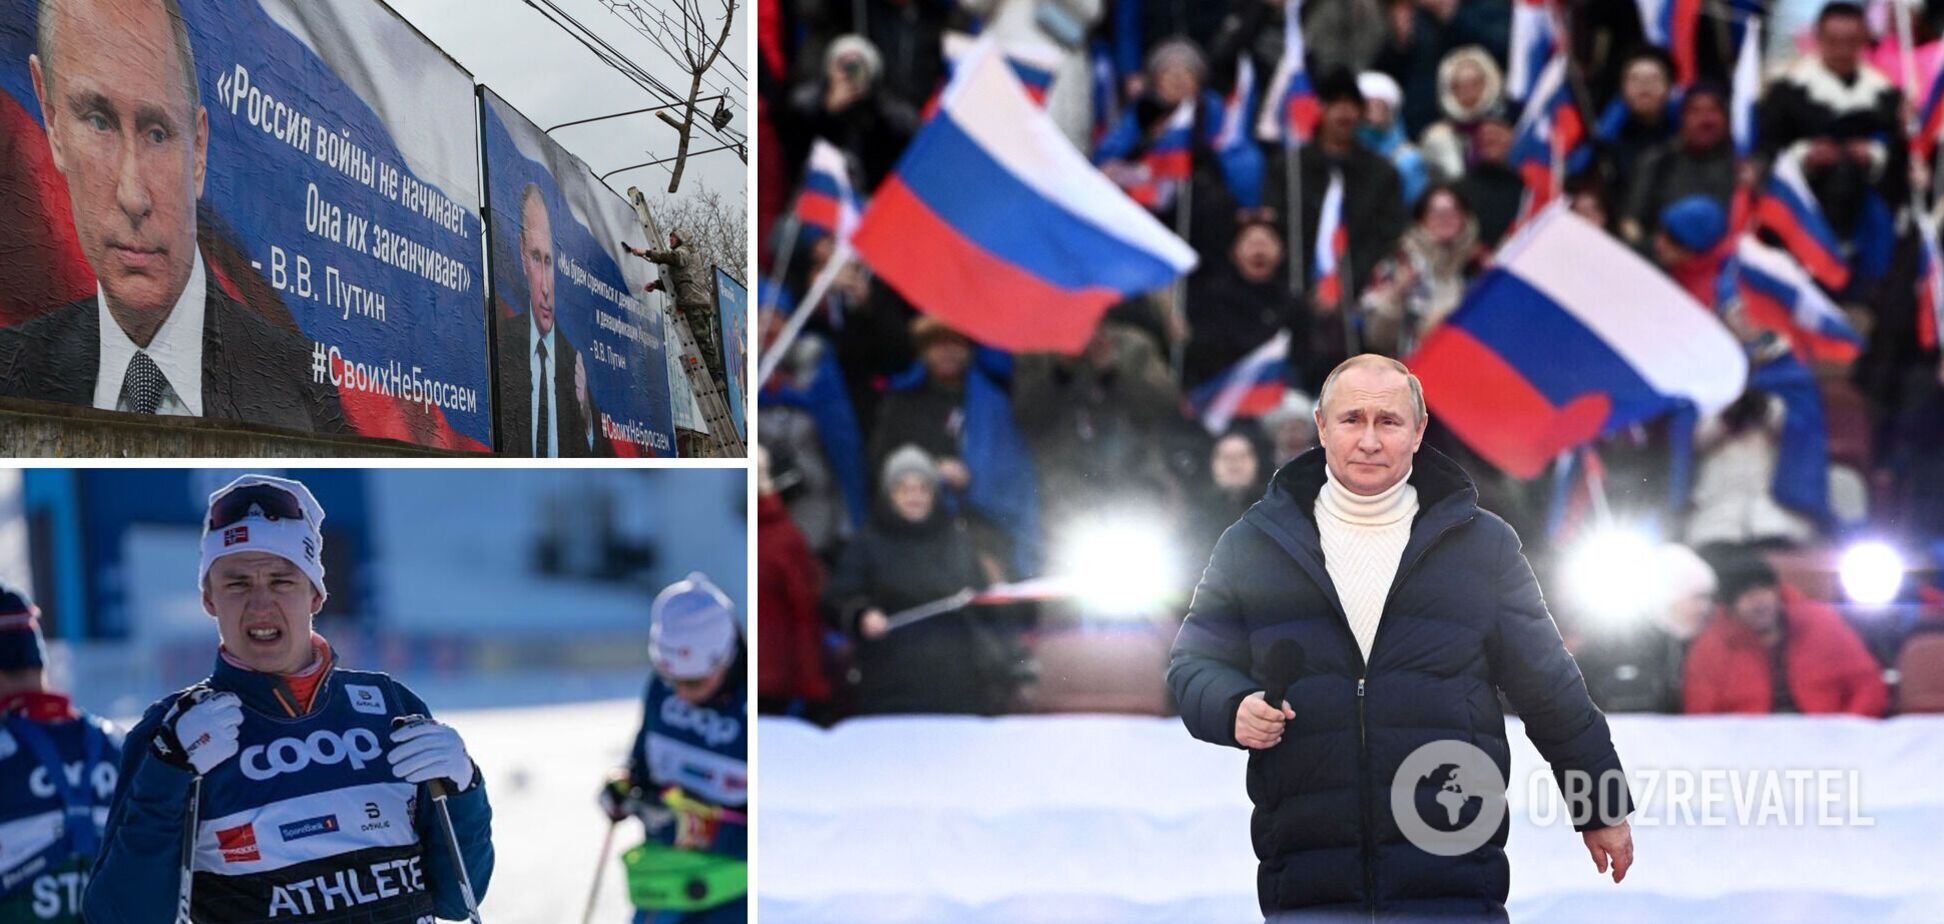 'У мене немає слів'. Норвезький чемпіон шокований вчинком Путіна у Москві